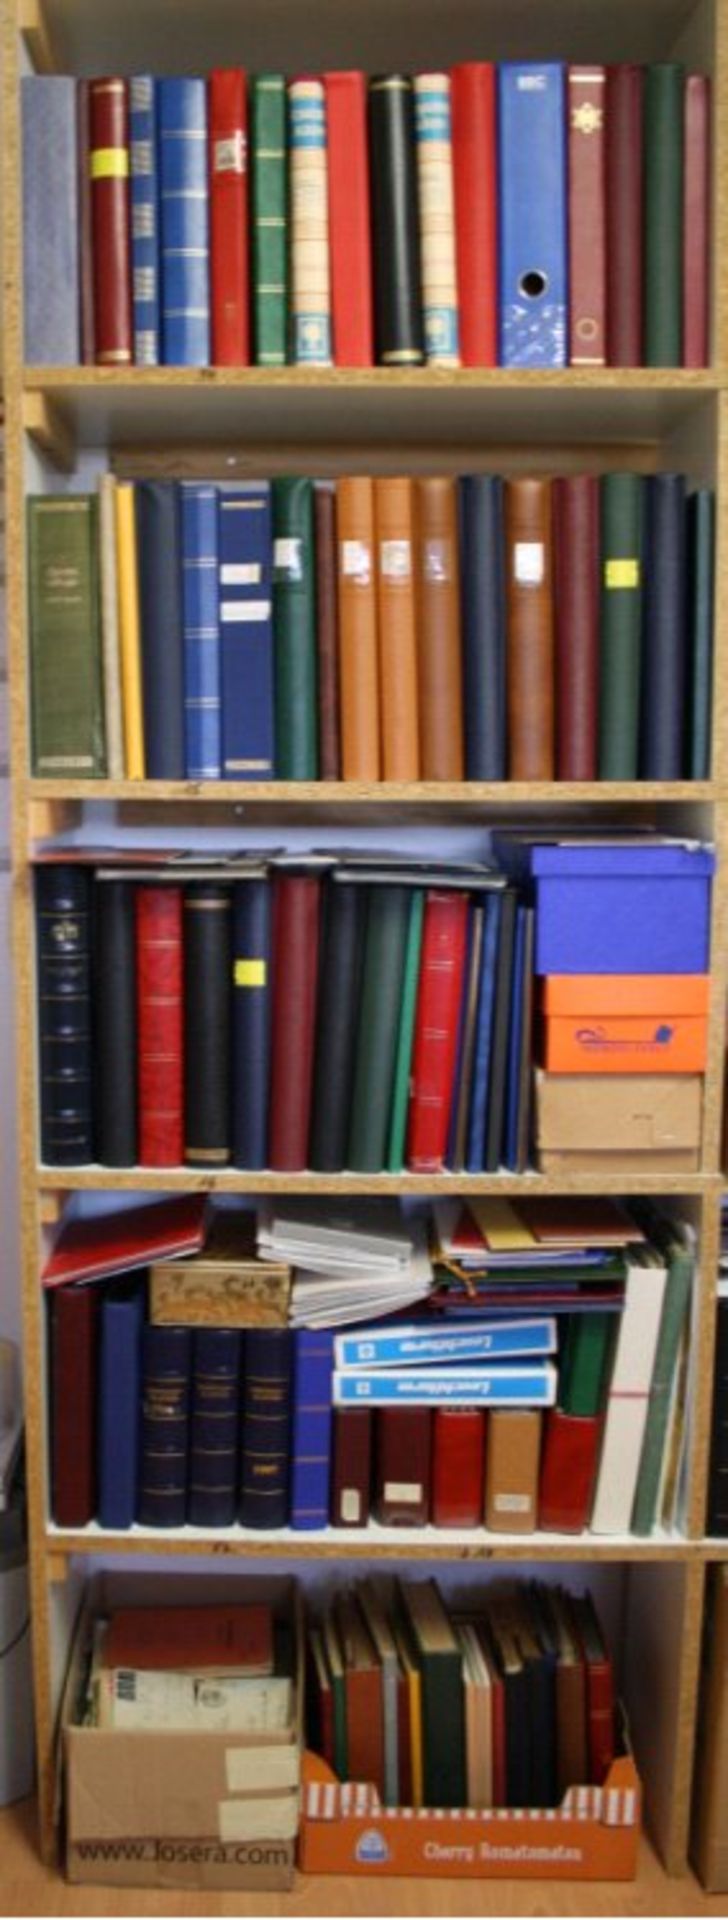 Der Sigehard Nachlassreichhaltiger Nachlass im Regal mit 50 großen Alben undEinsteckbüchern. Dabei